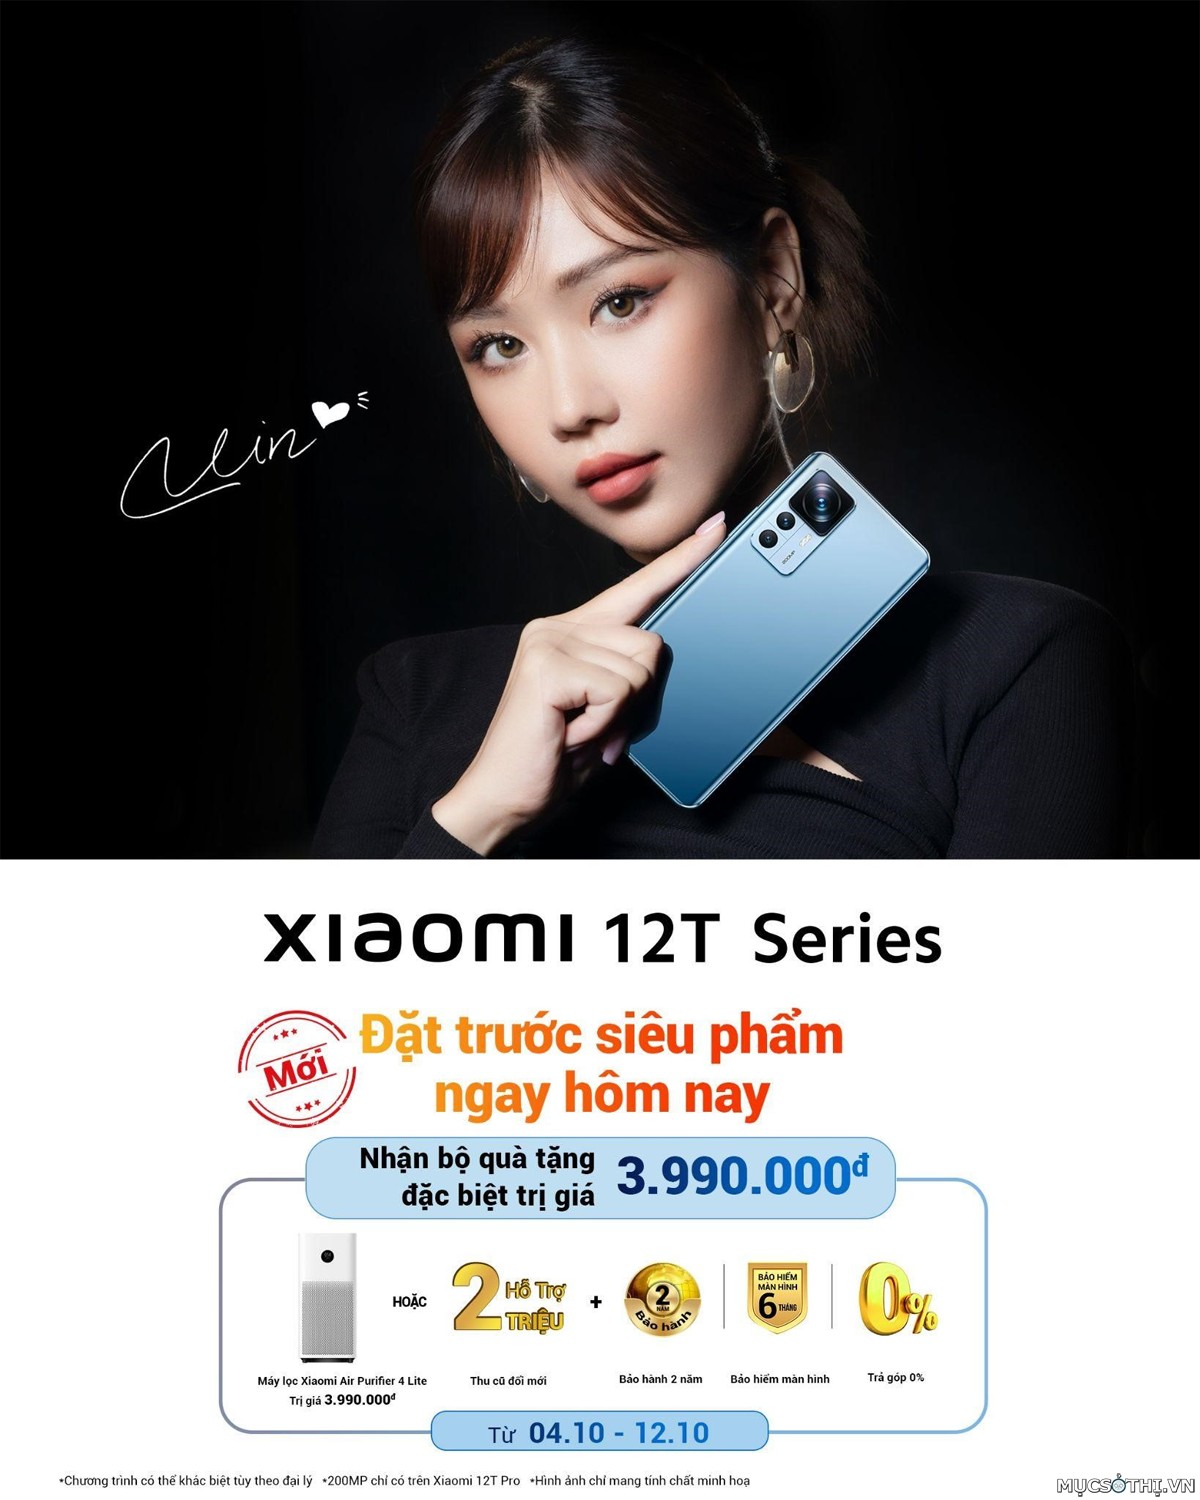 Xiaomi trình làng bộ siêu phẩm camera phone kiến tạo siêu khoảnh khắc 12T Series 5G 200MP - 09873.09873